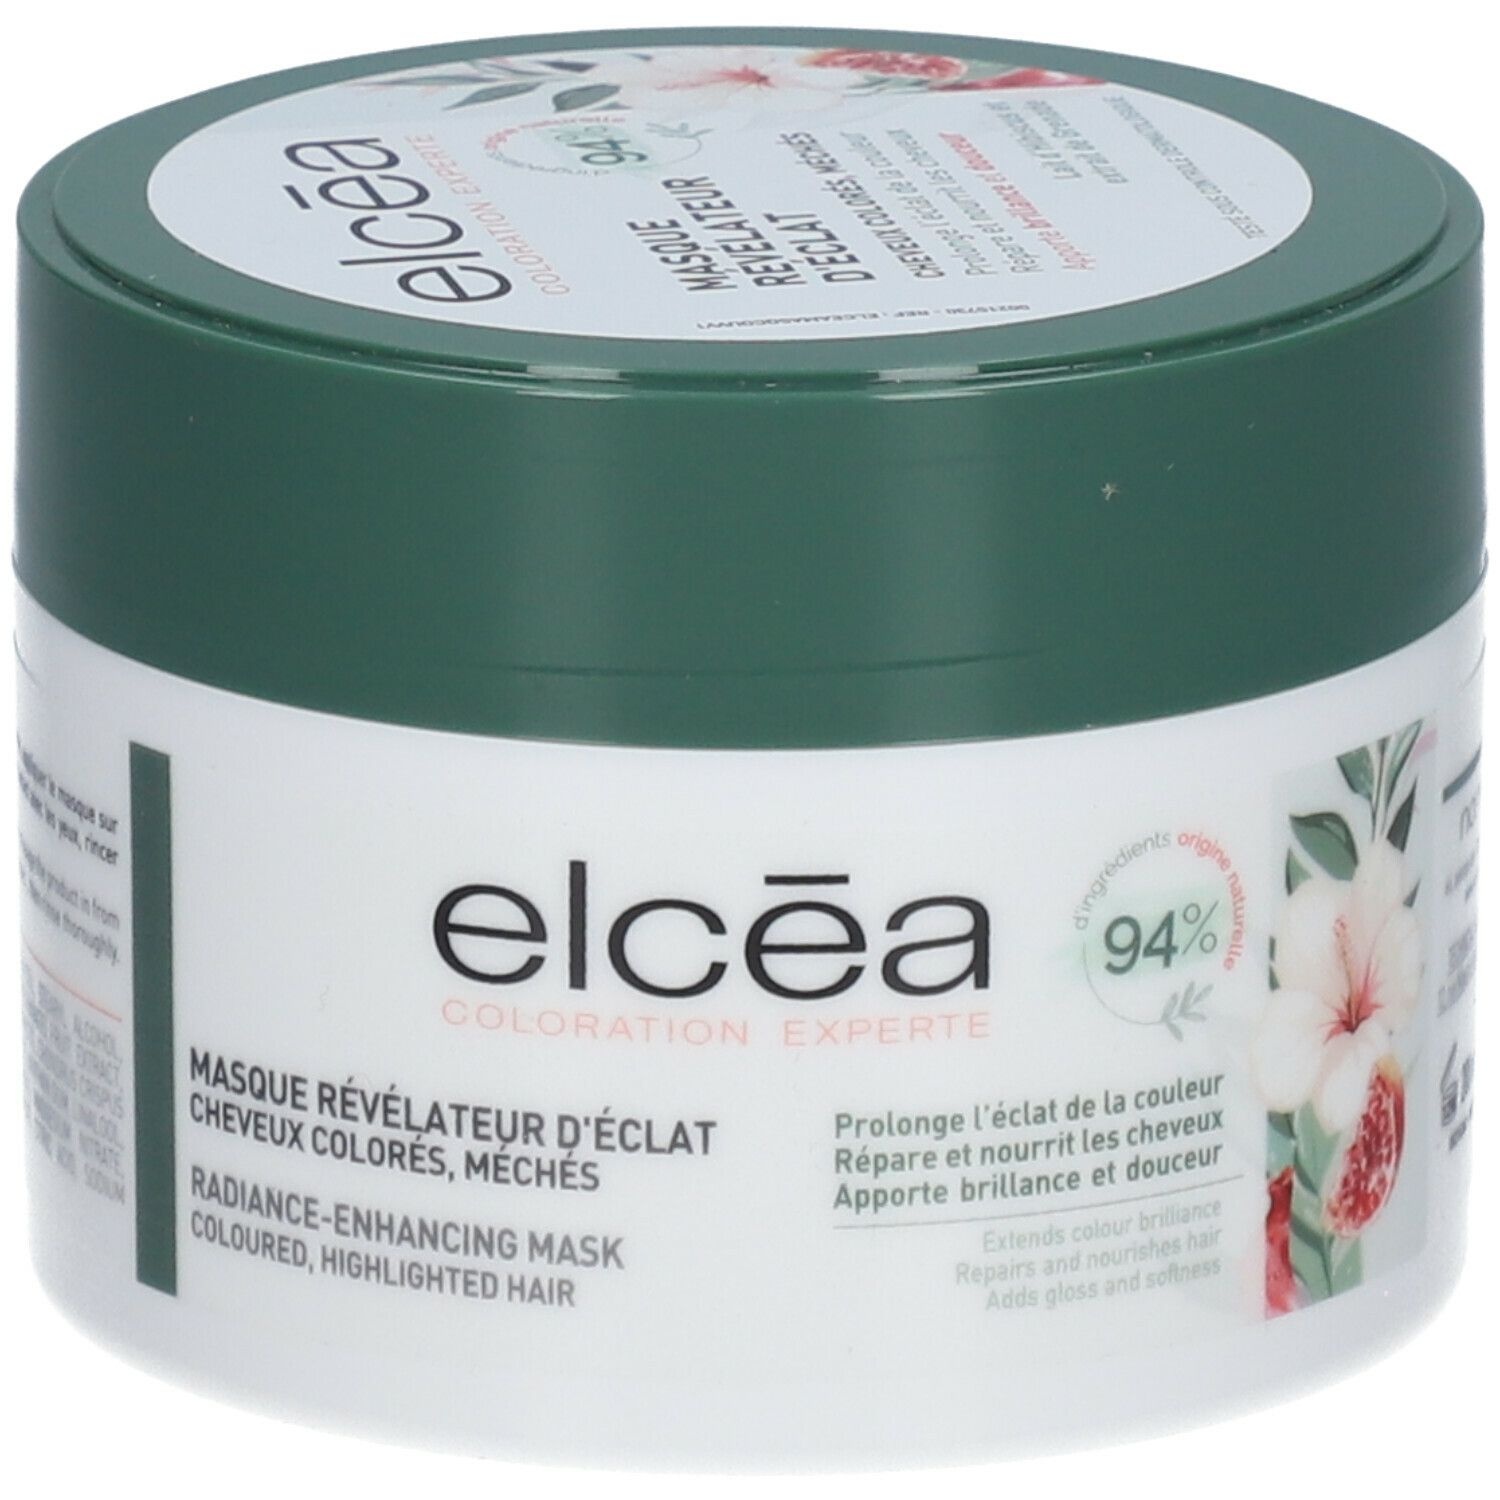 elcéa Masque Révélateur d’Eclat 250 ml crème